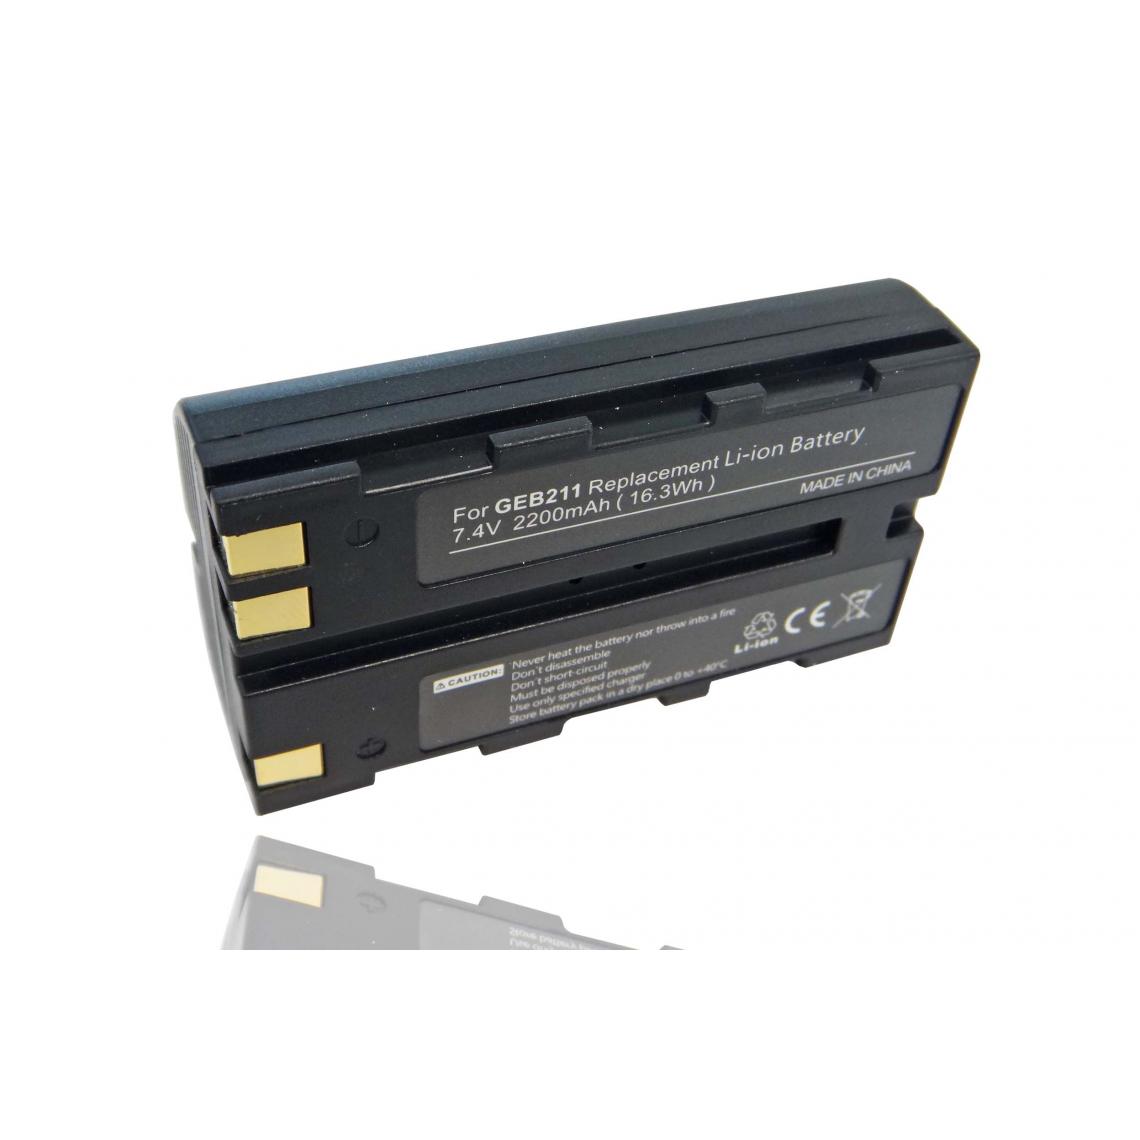 Vhbw - vhbw Batterie compatible avec Leica TCR802 Power, TCR803 Power dispositif de mesure laser, outil de mesure (2200mAh, 7,4V, Li-ion) - Piles rechargeables